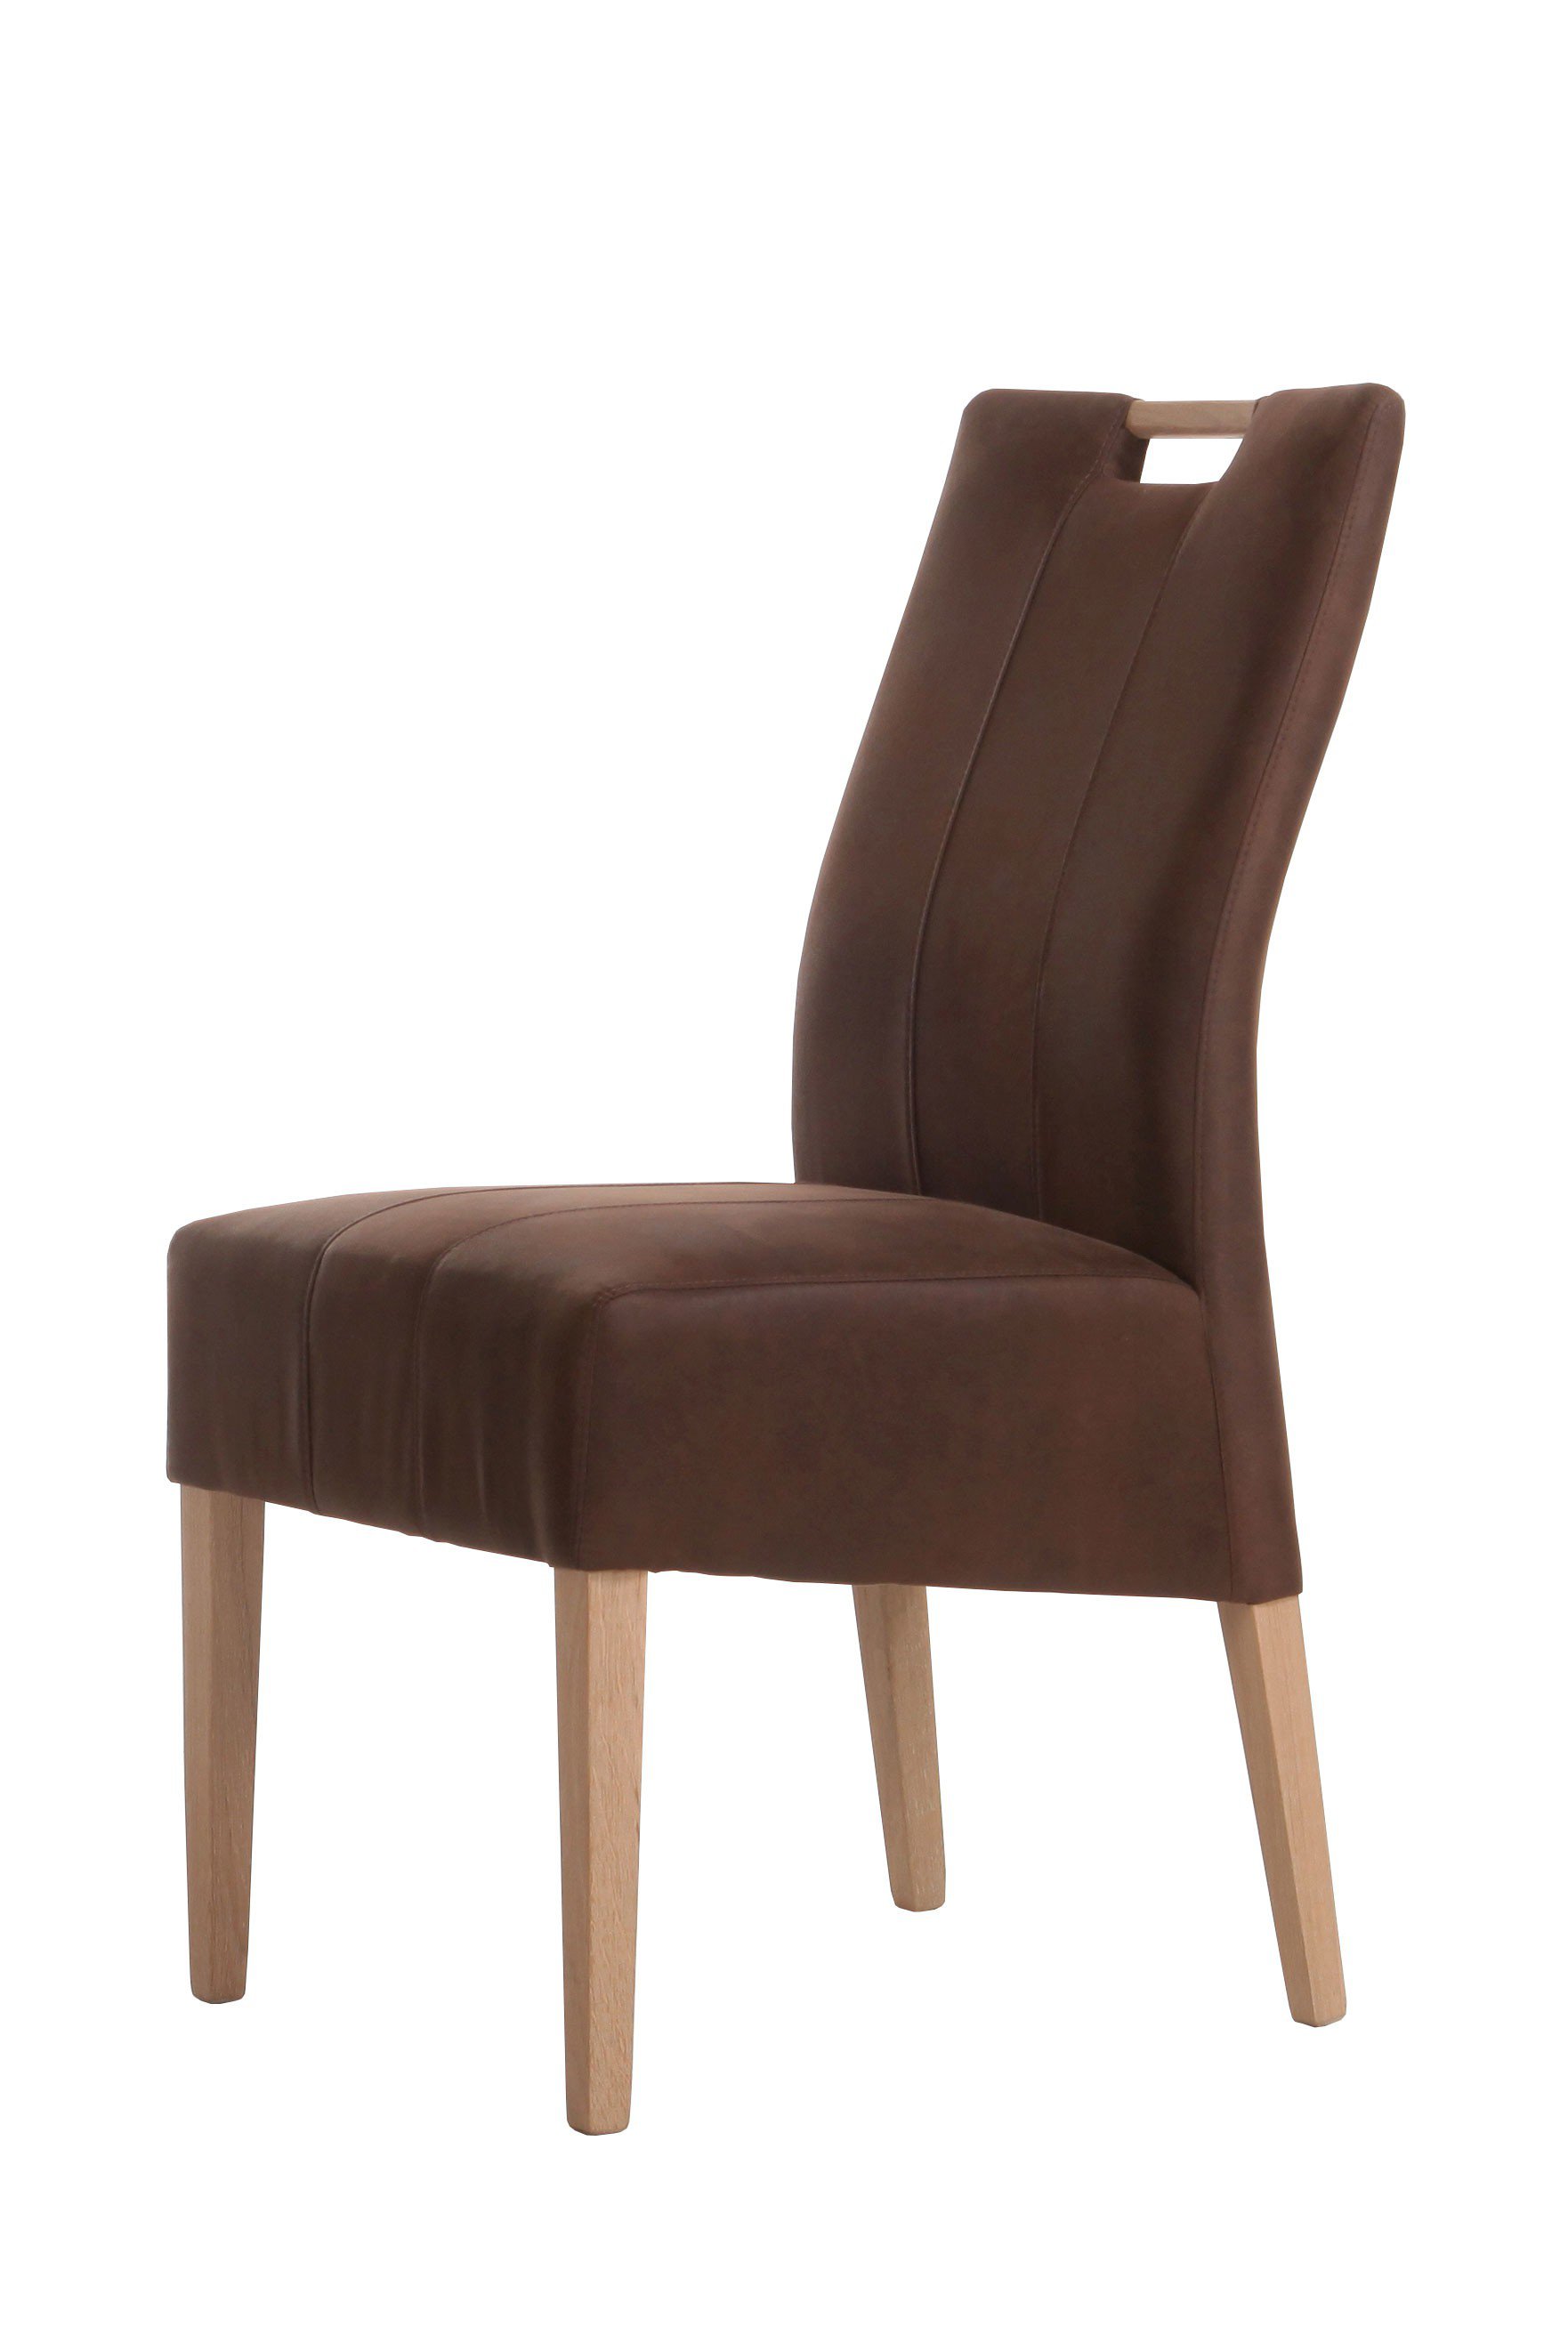 Standard Furniture Stuhl Vigo in Dunkelbraun/ Eiche natur | Möbel Letz -  Ihr Online-Shop